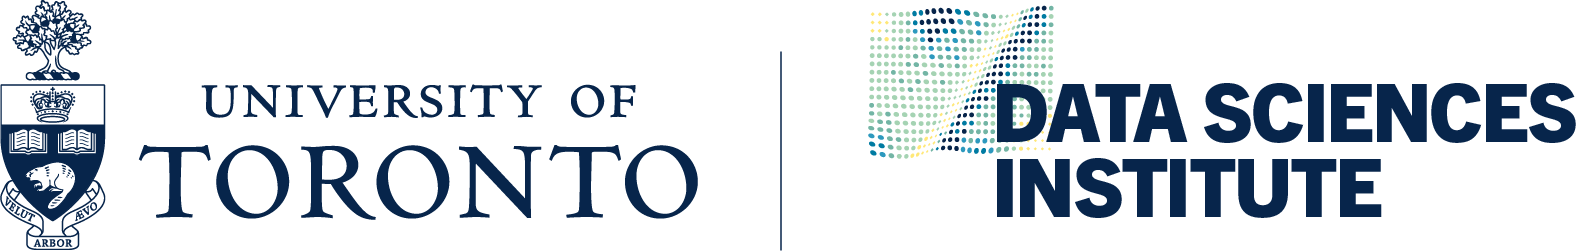 University of Toronto Data Sciences Institute Logo